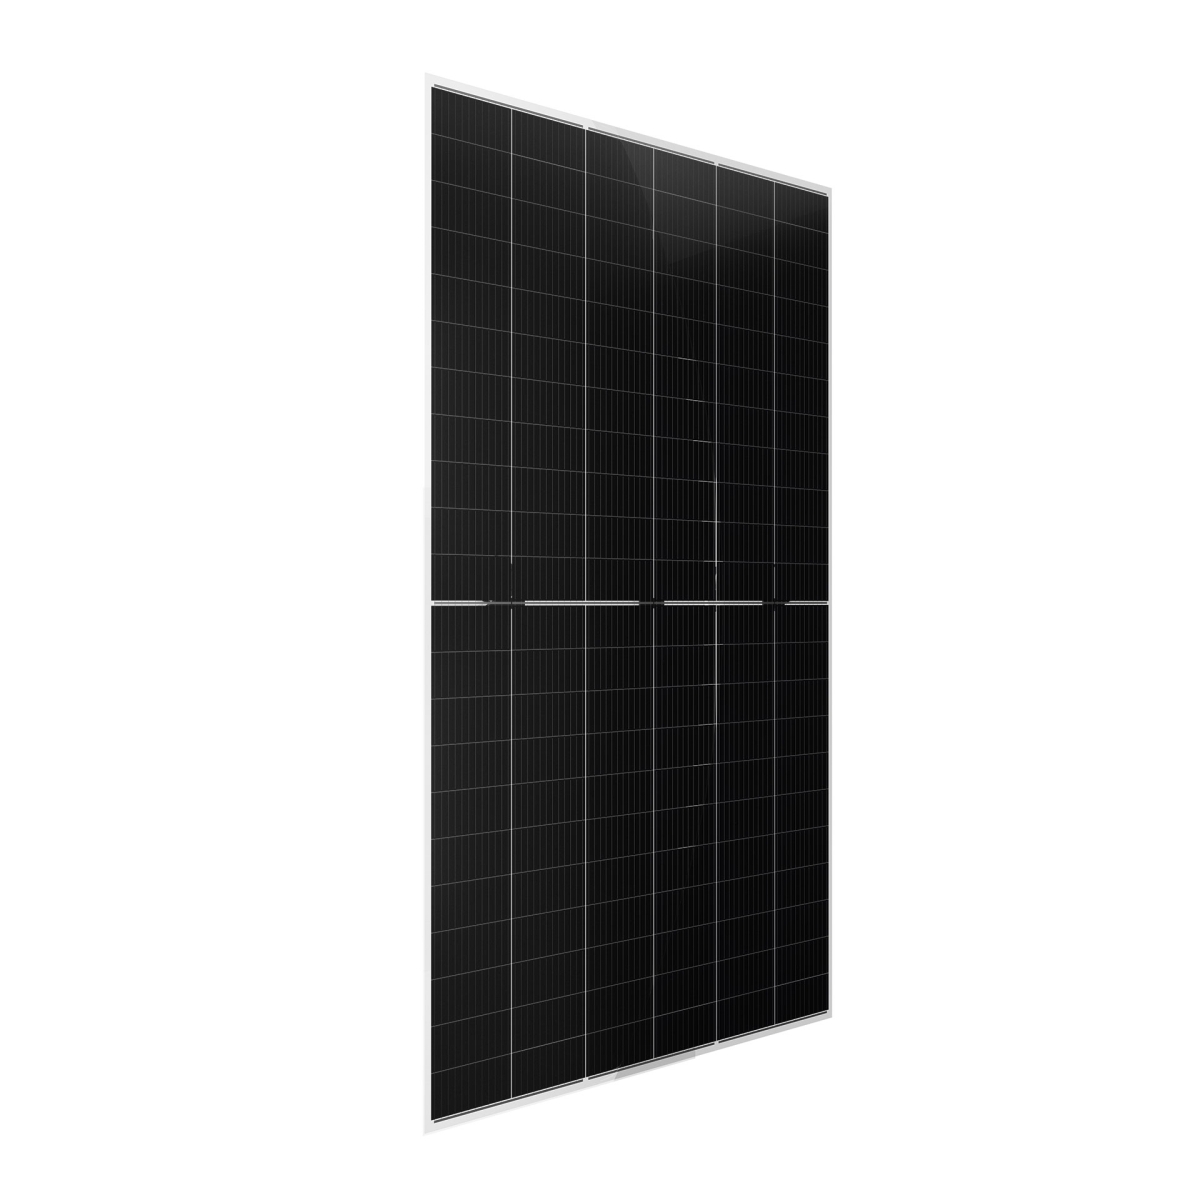 CW Enerji 665Wp M12 132PM Zellen Bifacial G2G Half-Cut MB Solarmodul